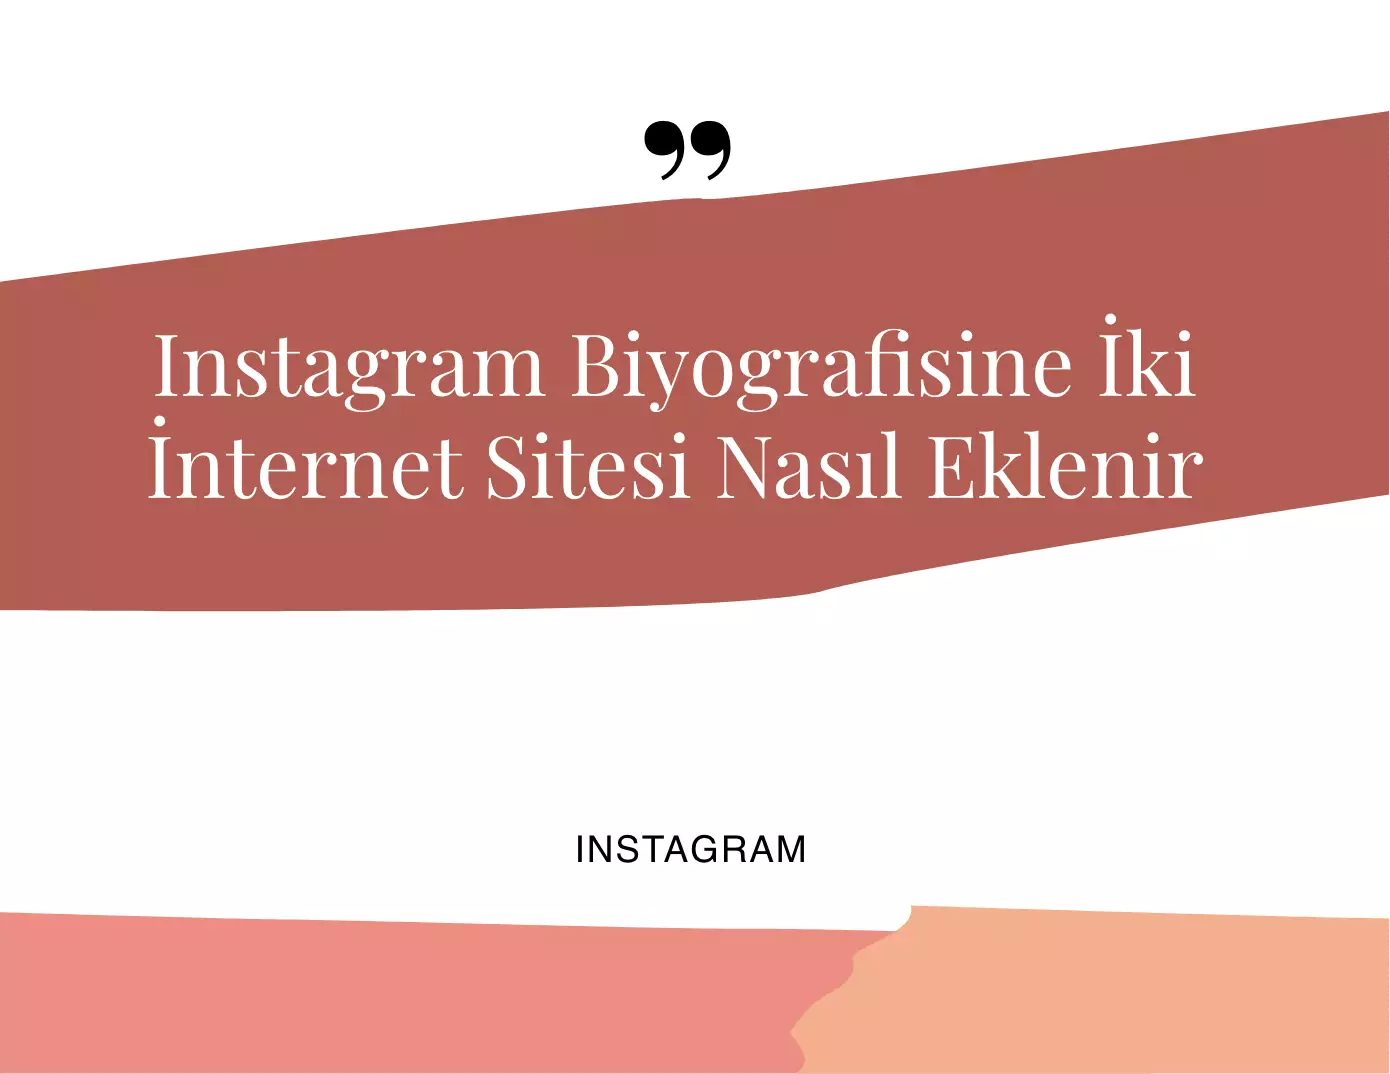 Instagram Biyografisine İki İnternet Sitesi Nasıl Eklenir?